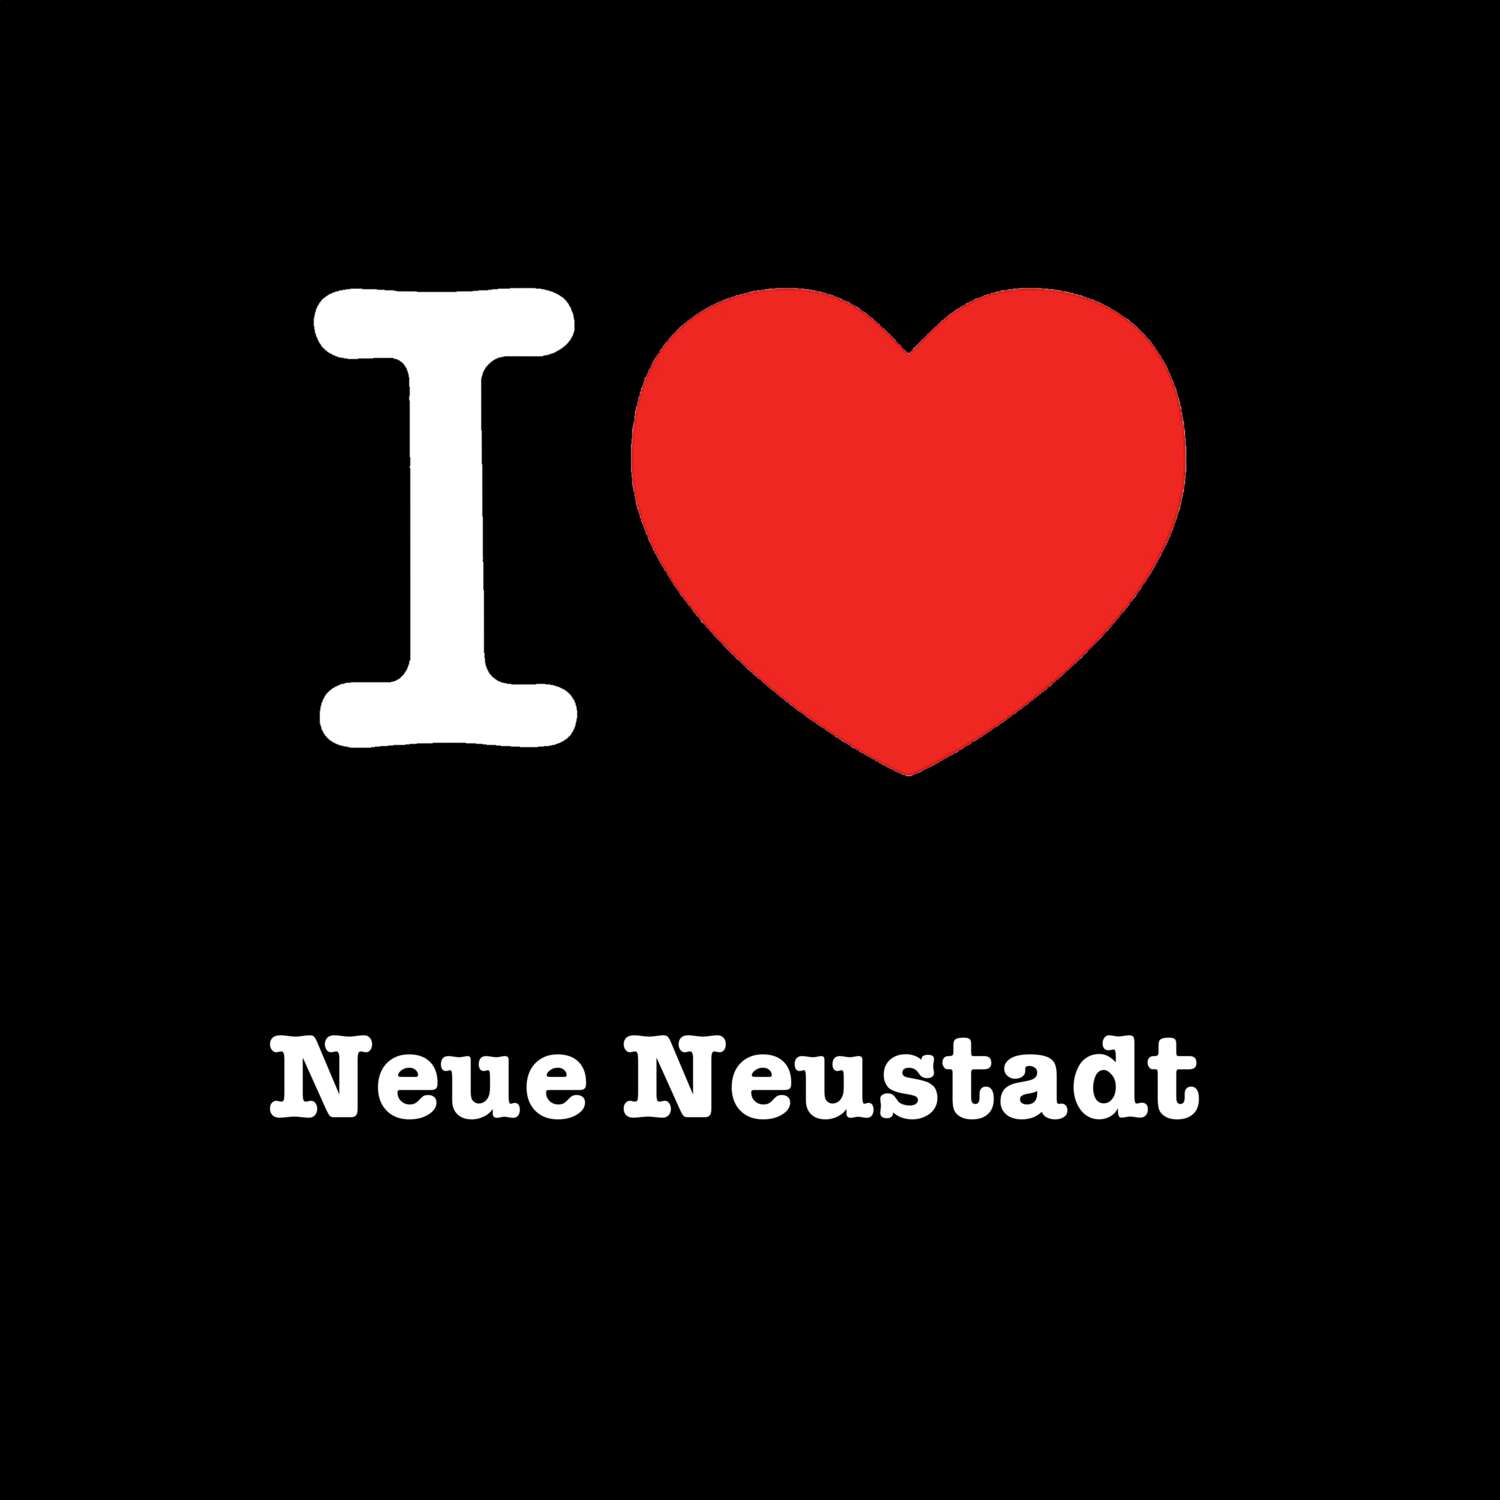 Neue Neustadt T-Shirt »I love«